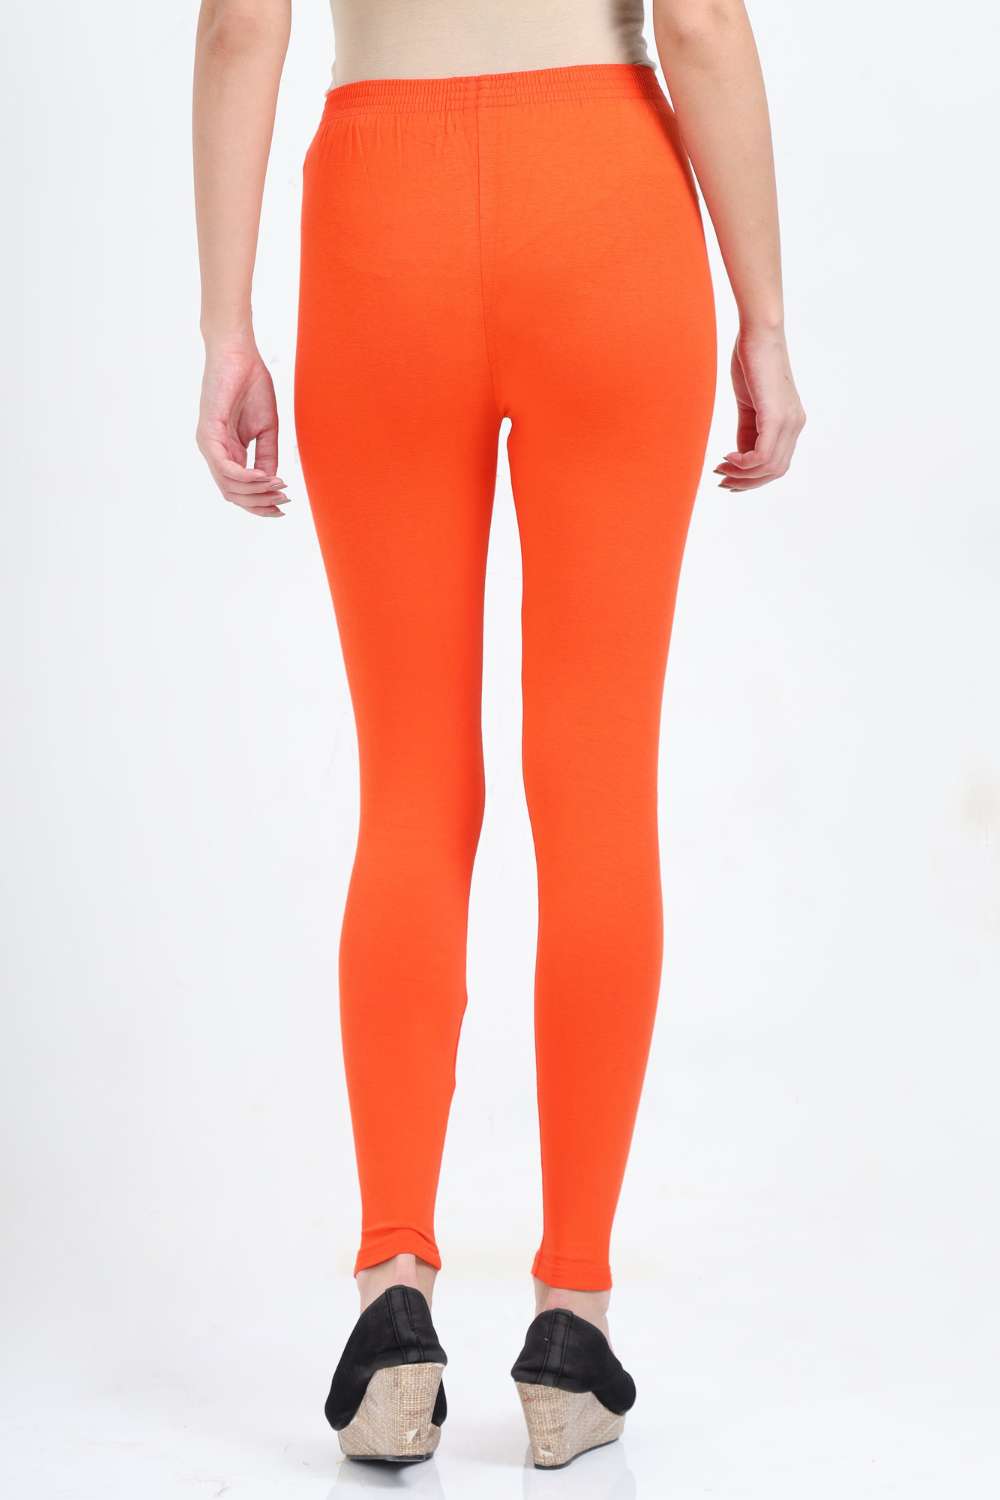 Women's Cotton Lycra Orange Ankle Legging | sandgrouse